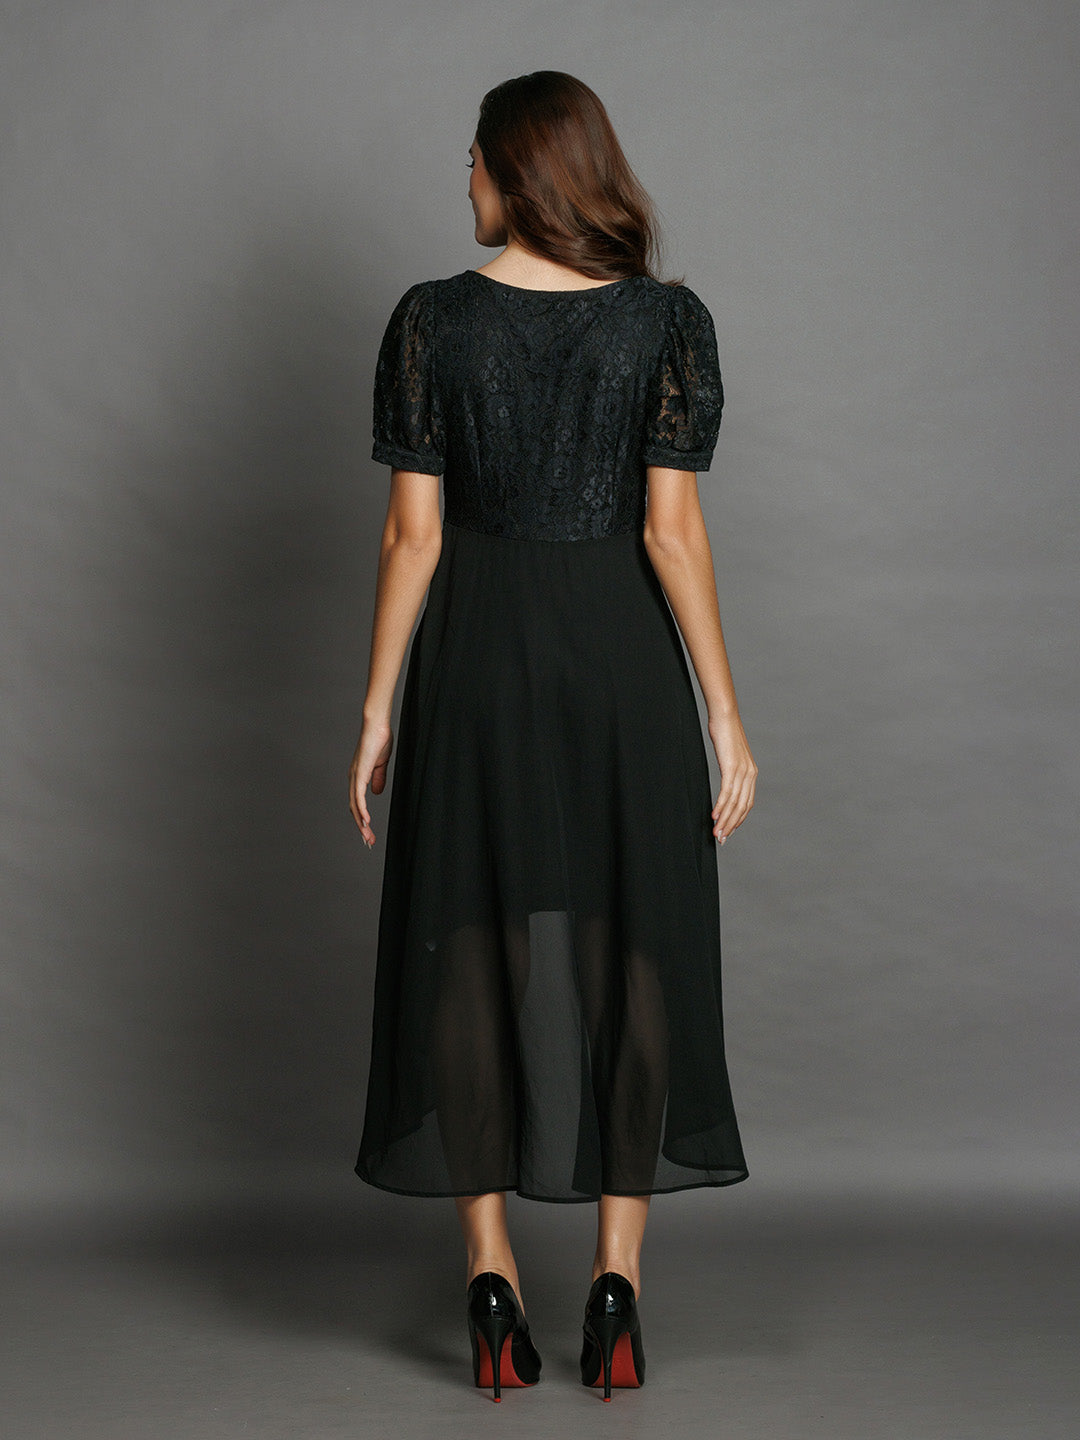 Black-Lace-Flared-Midi-Dress-D08029-4